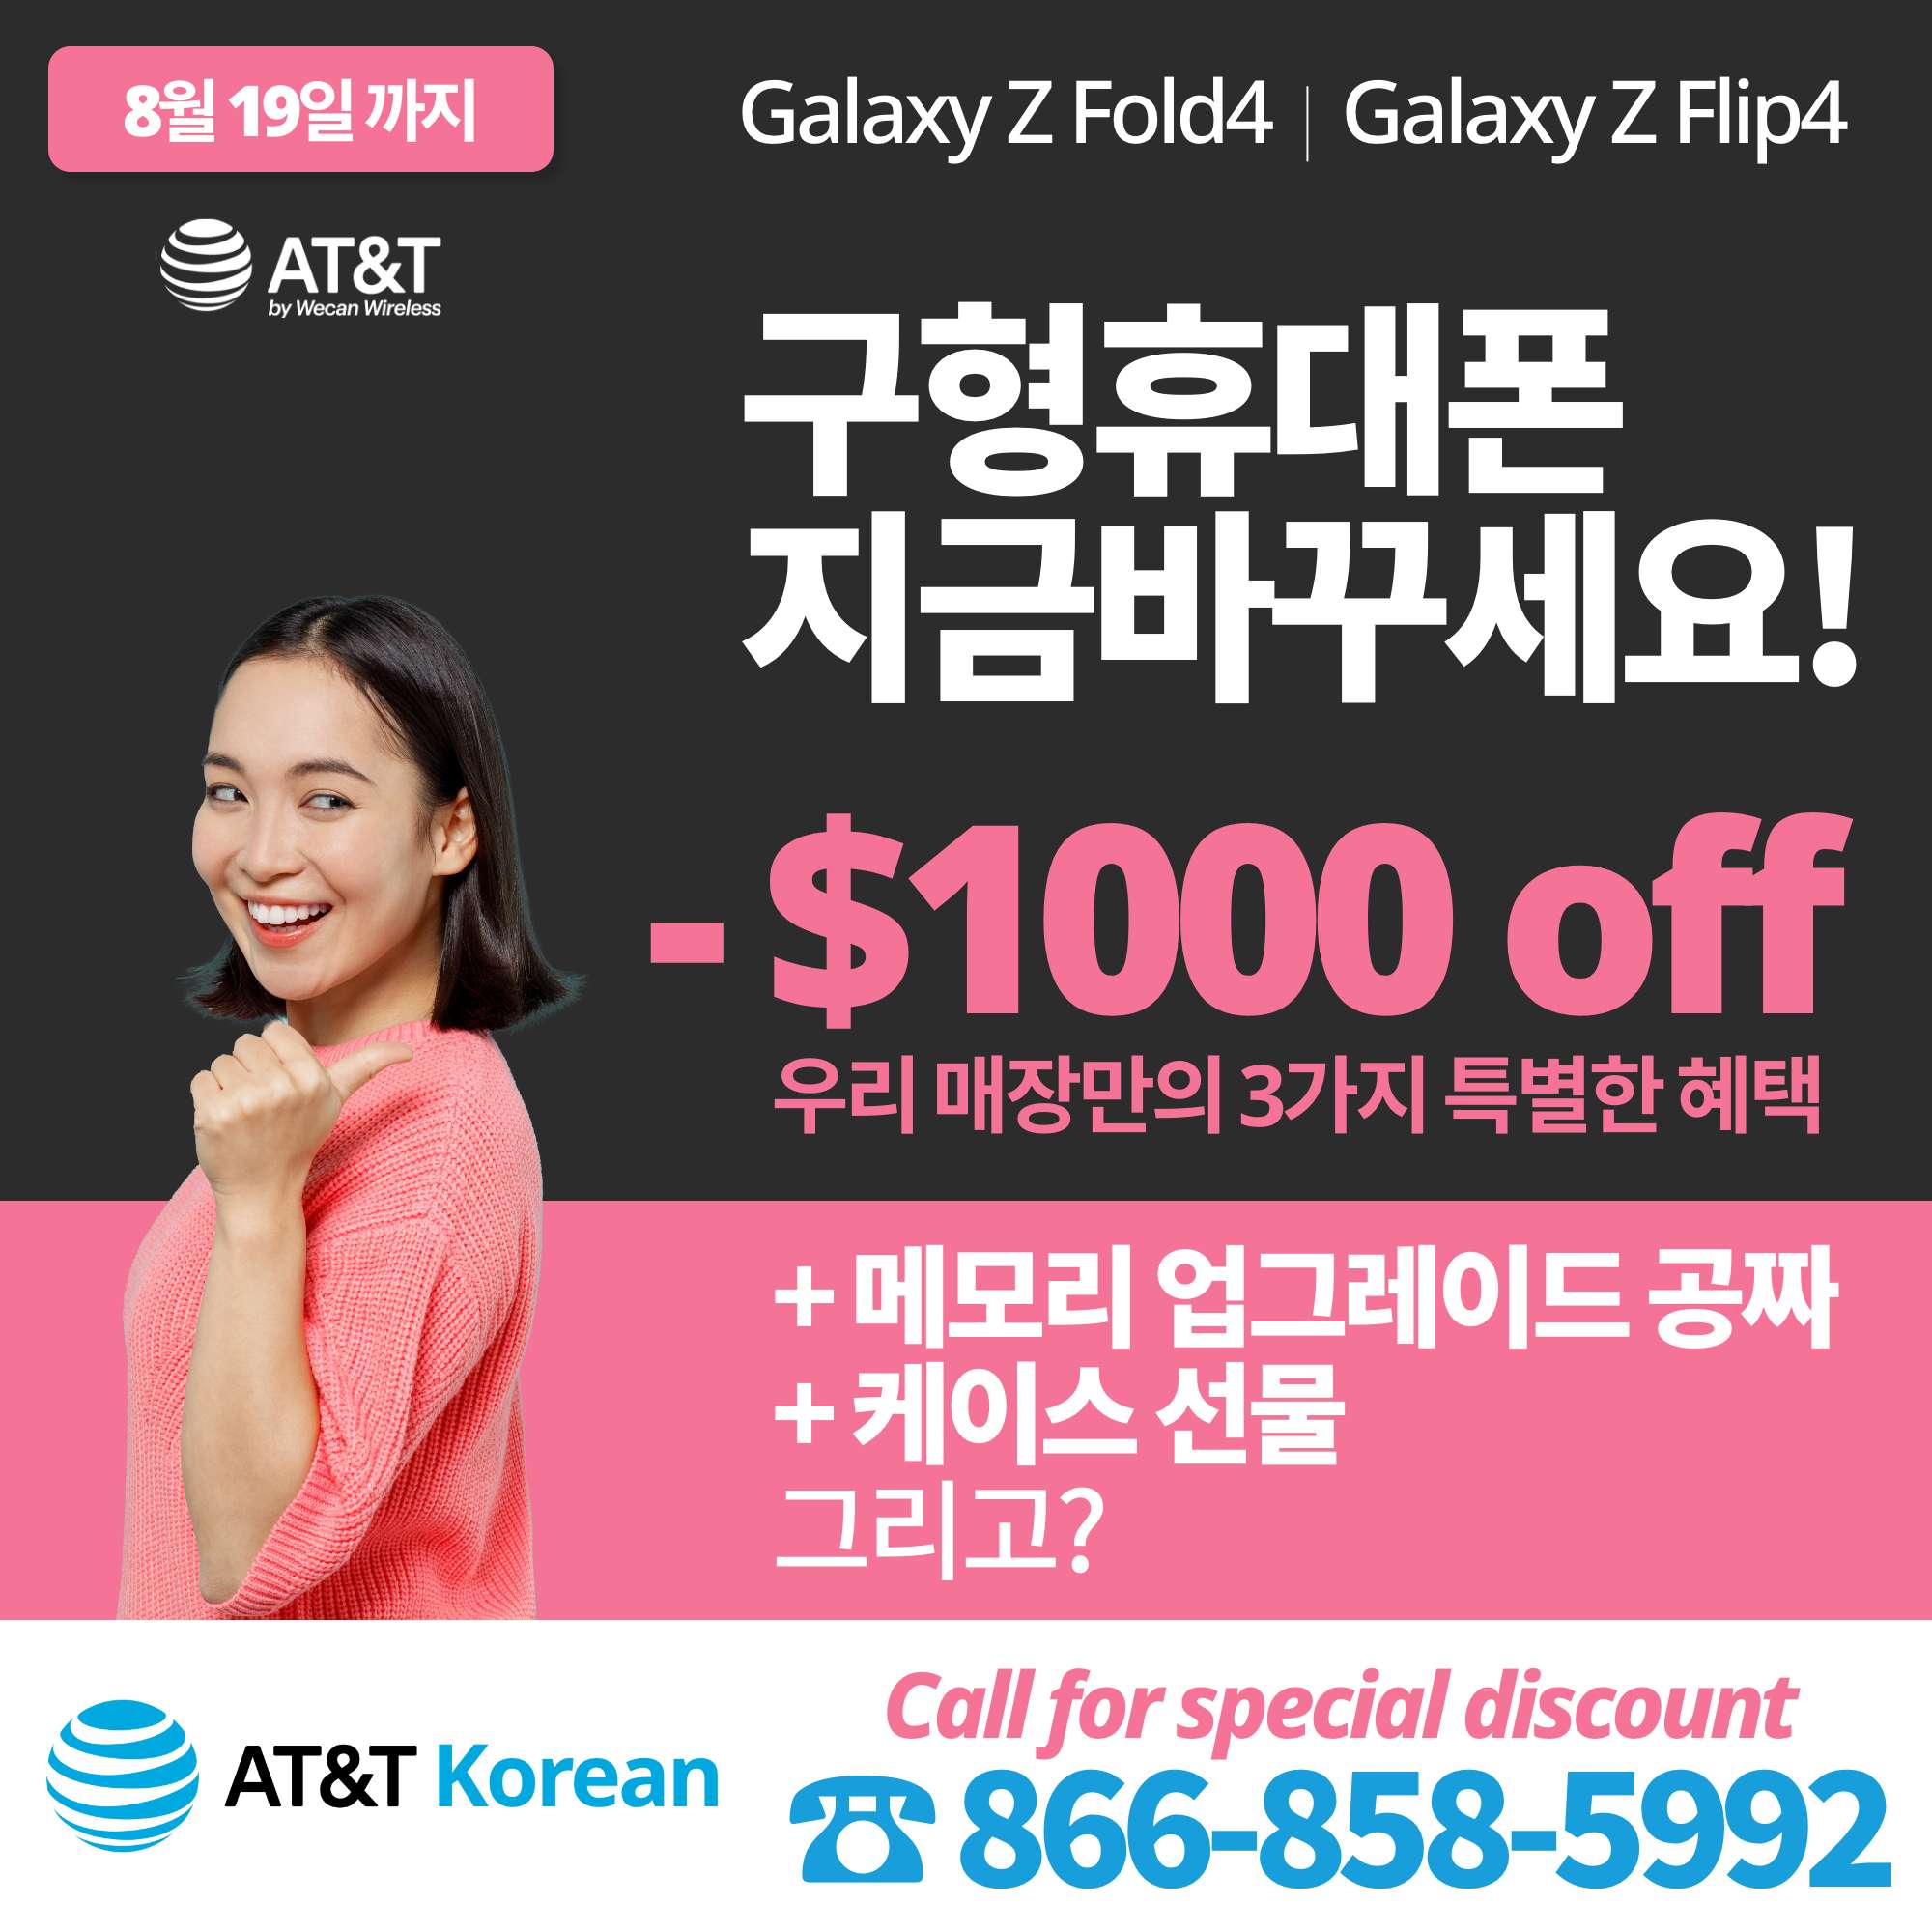 AT&T 한국어 - 미국내 유일한 한인공인딜러 - 아이폰 및 갤럭시 핫딜, 무제한플랜, 홈인터넷 등 전문 무료 상담